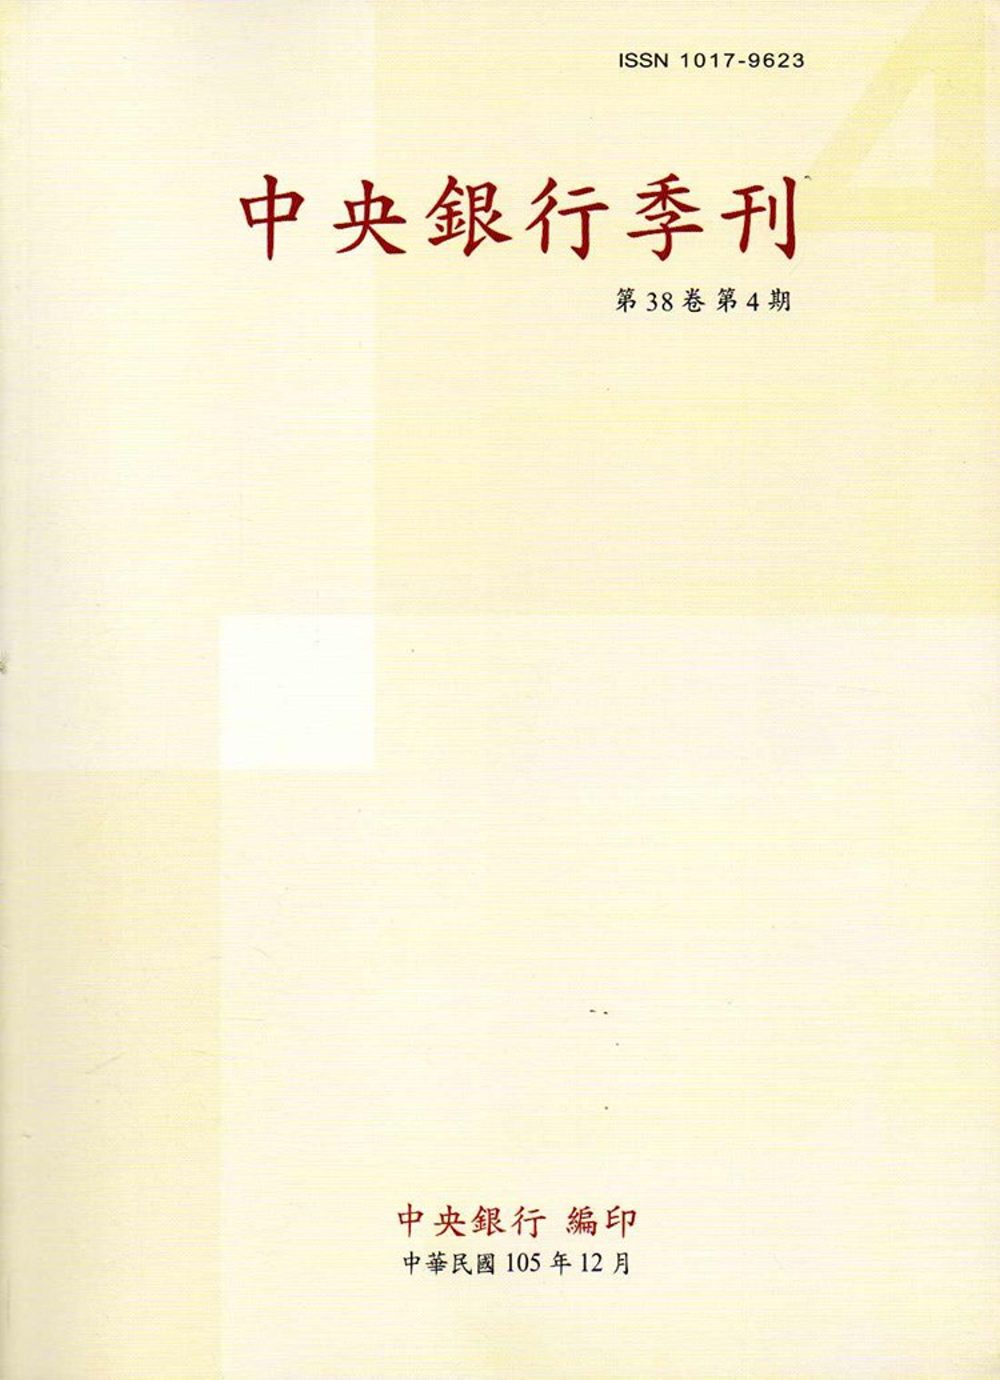 中央銀行季刊38卷4期(105.12)